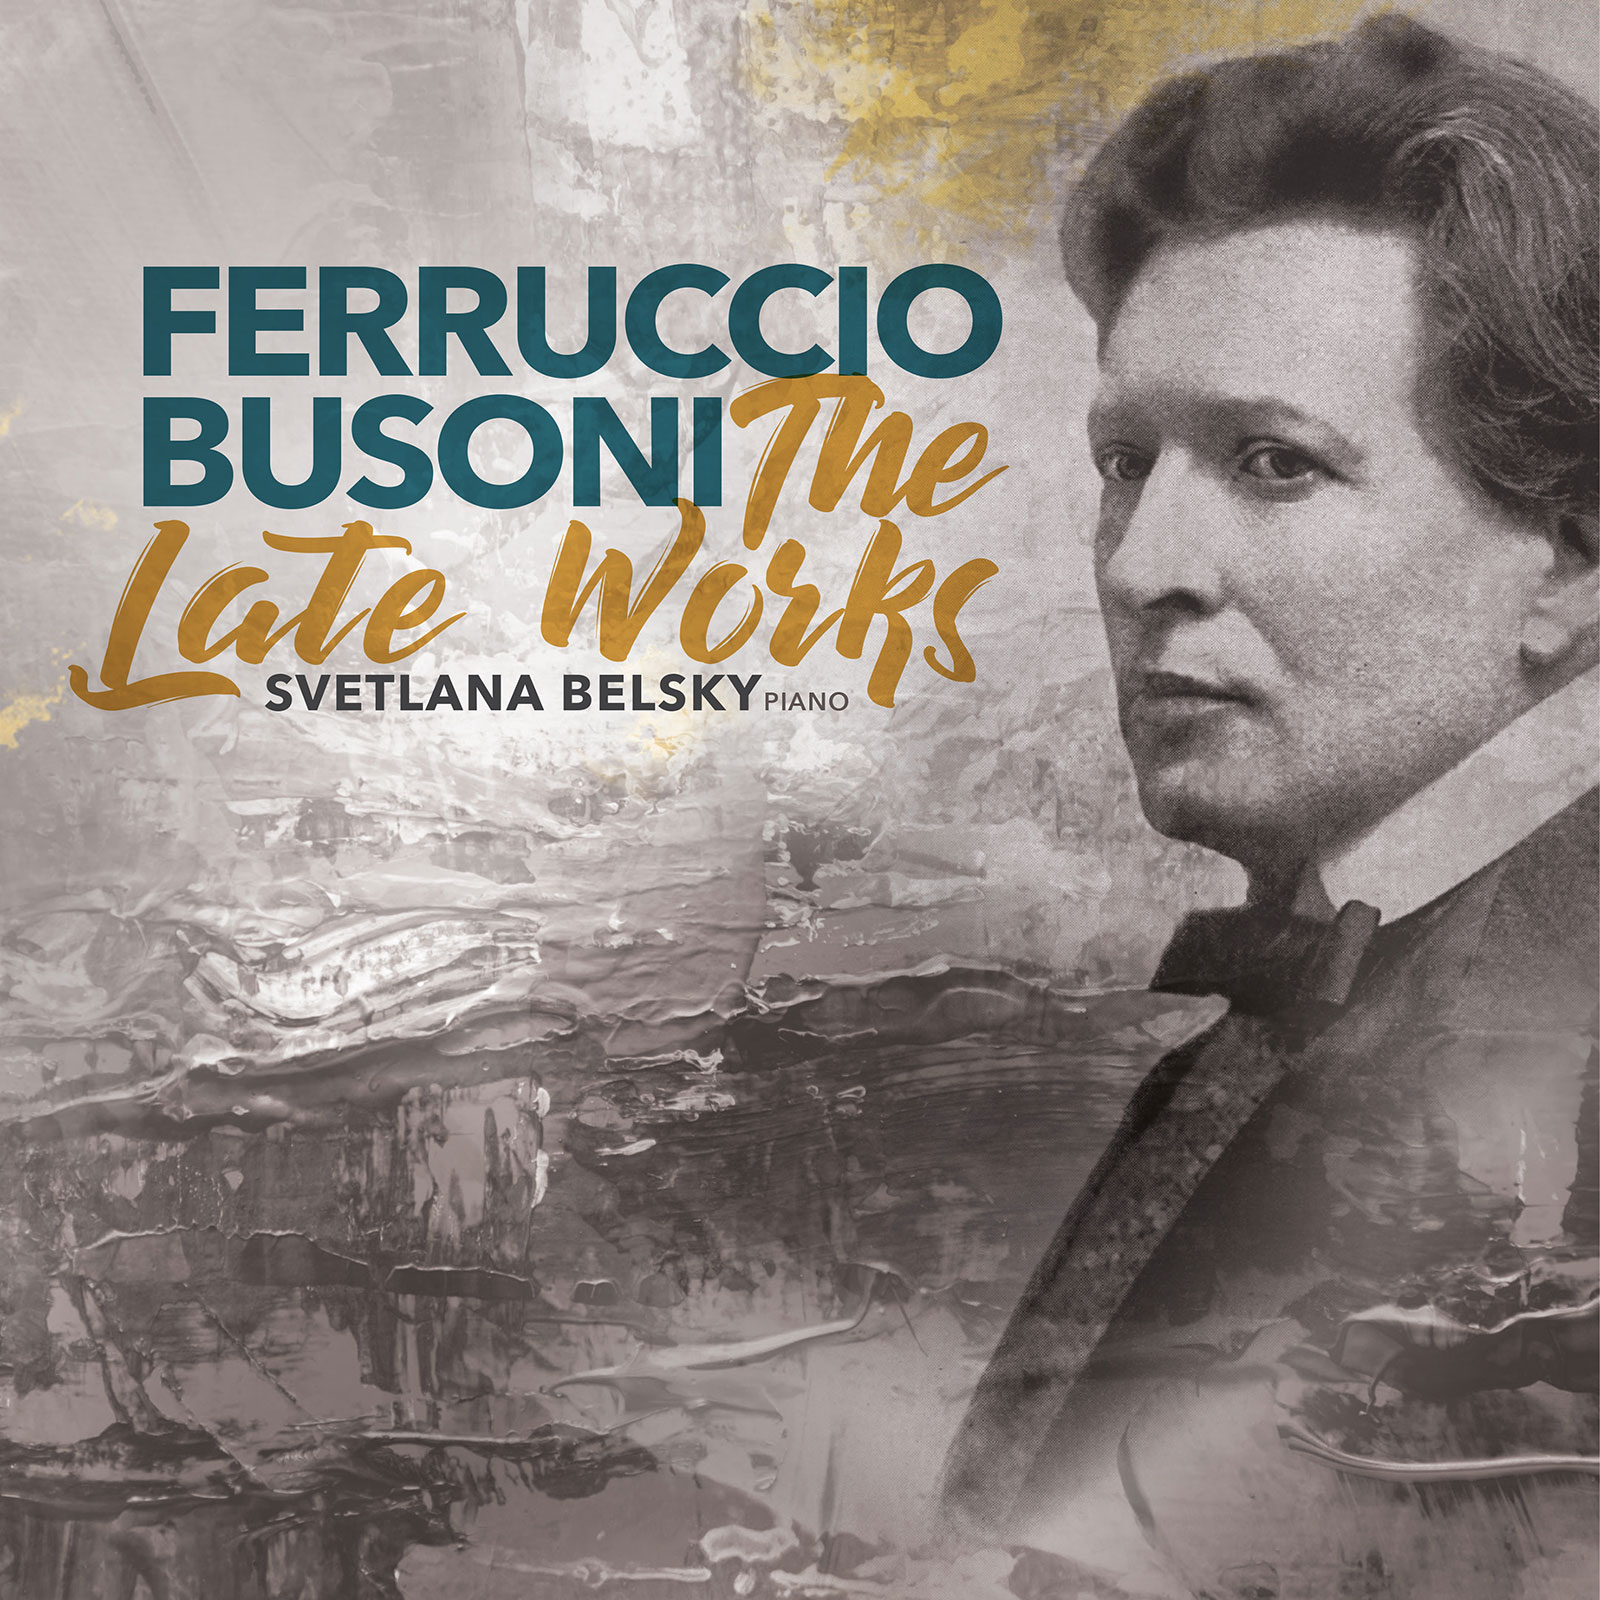 Ferruccio Bussoni: The Late Works